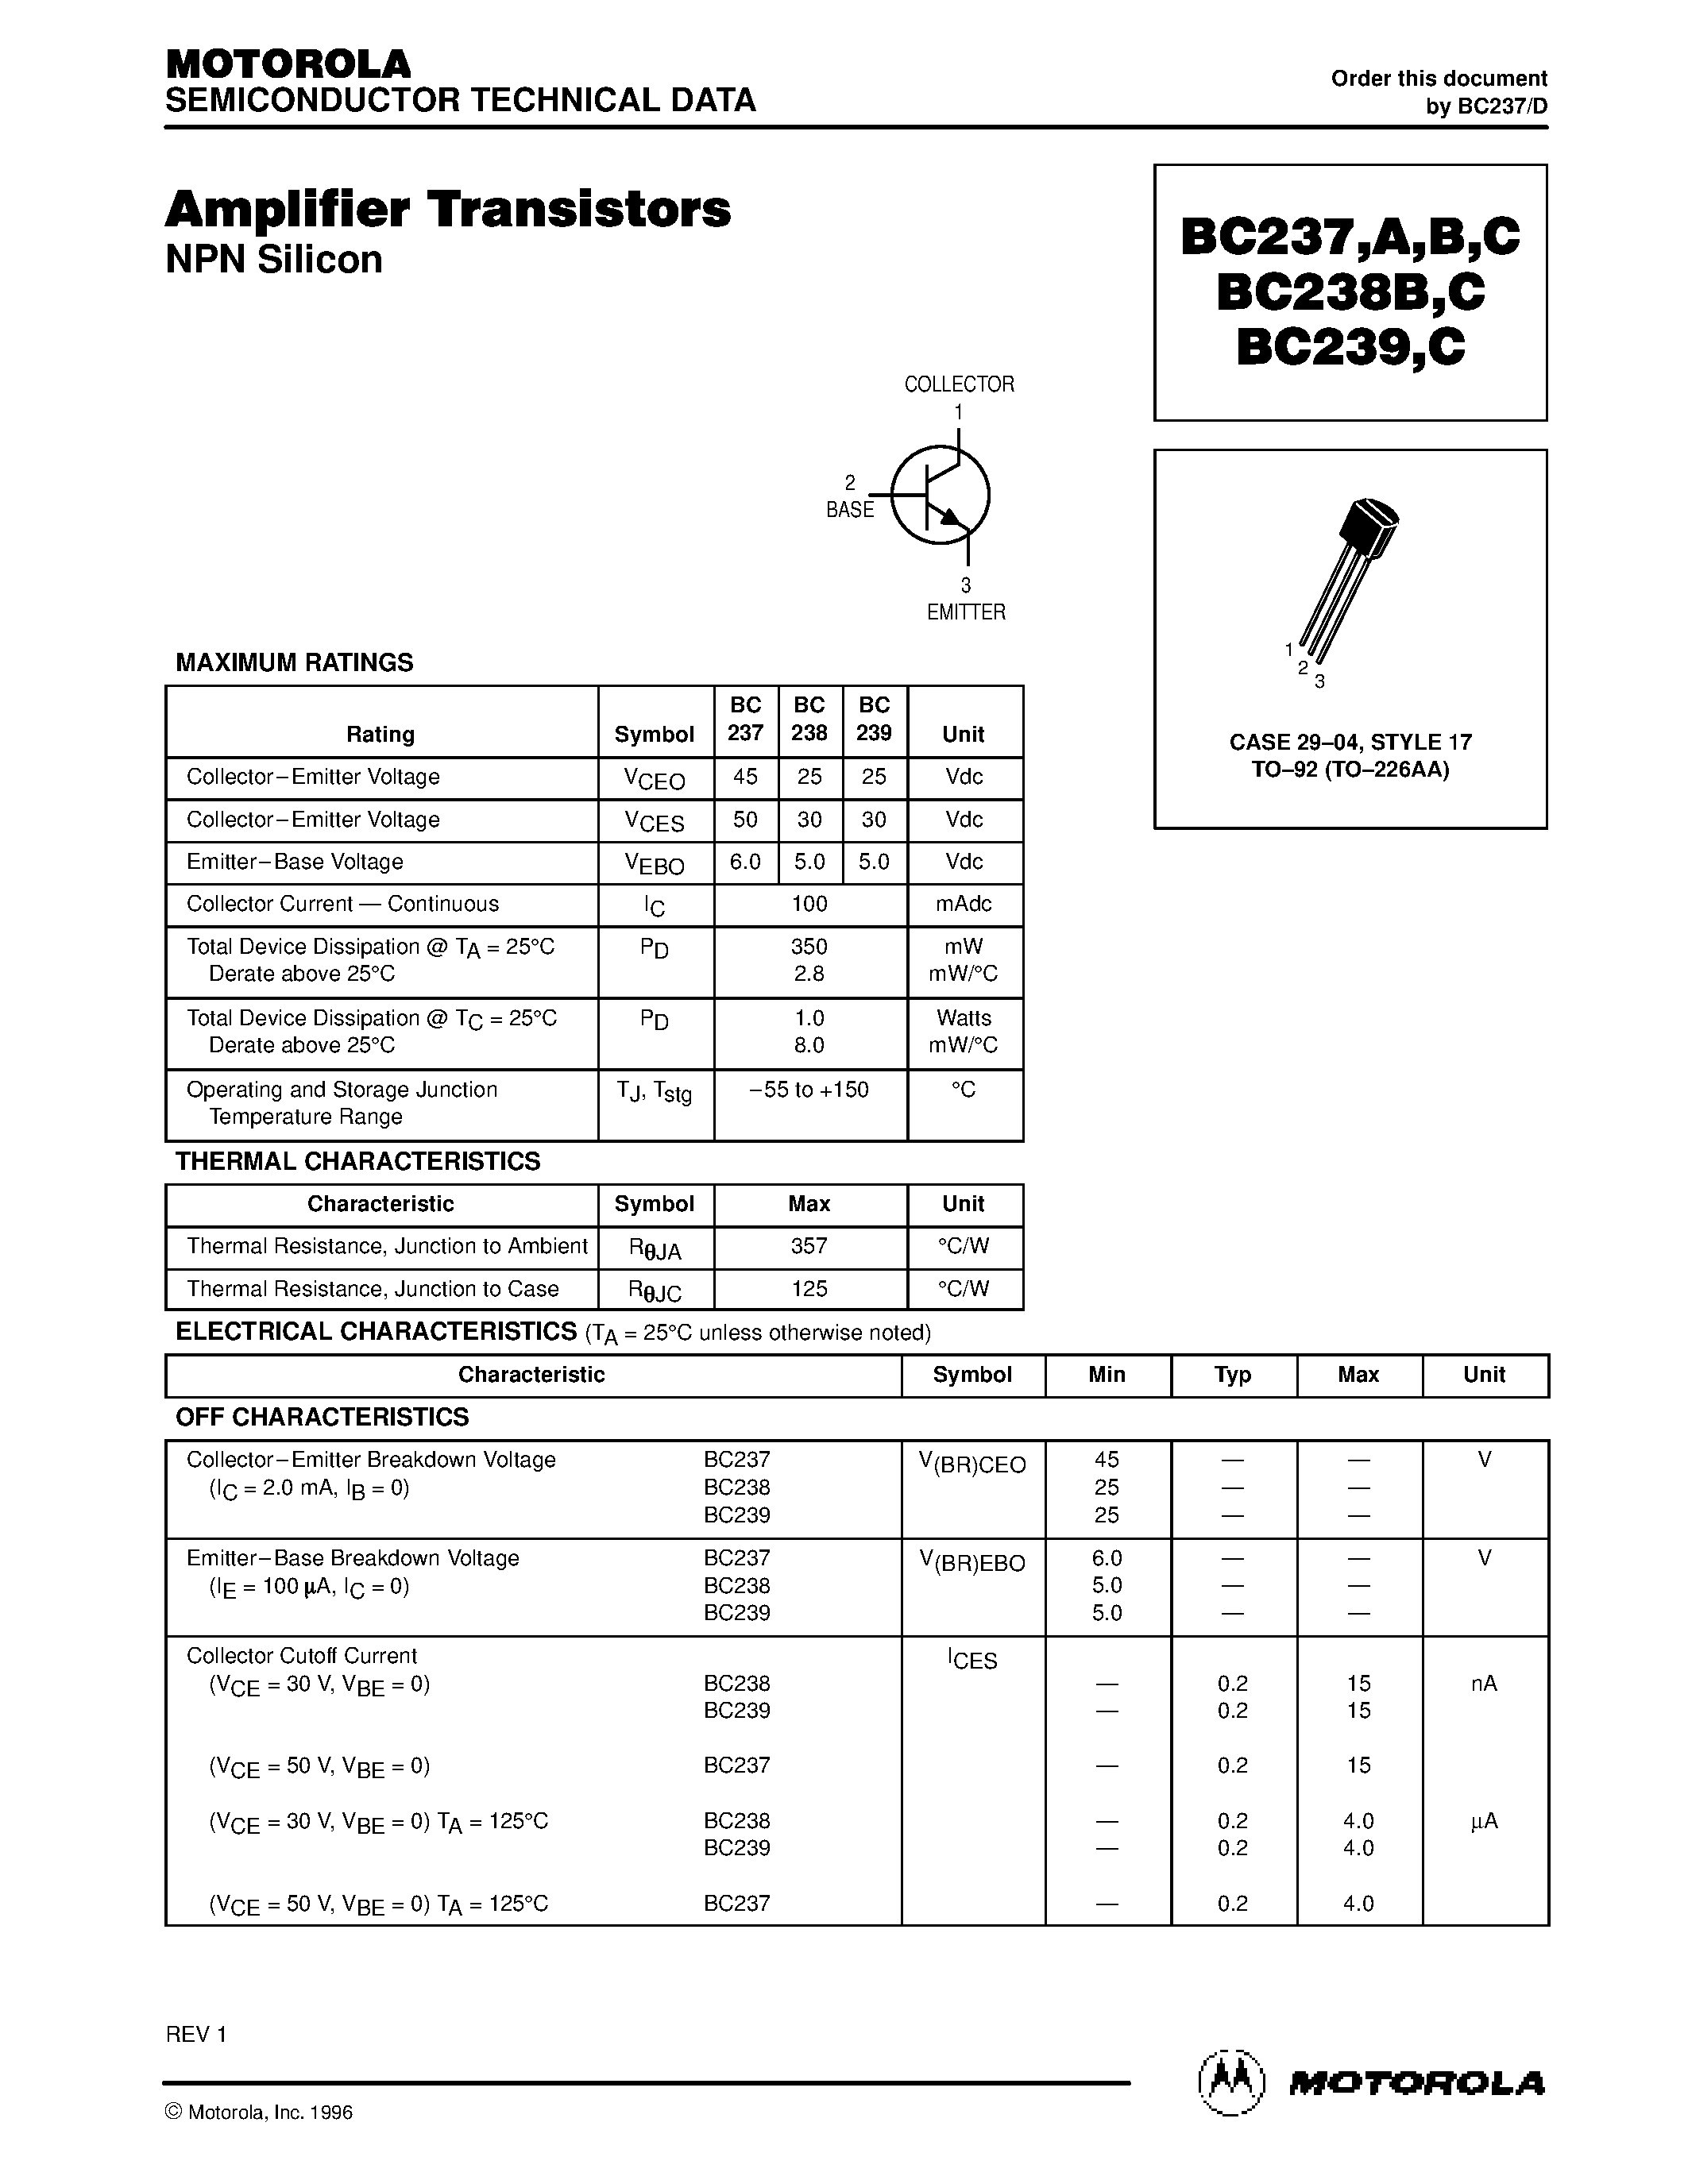 Даташит BC239C - Amplifier Transistors страница 1